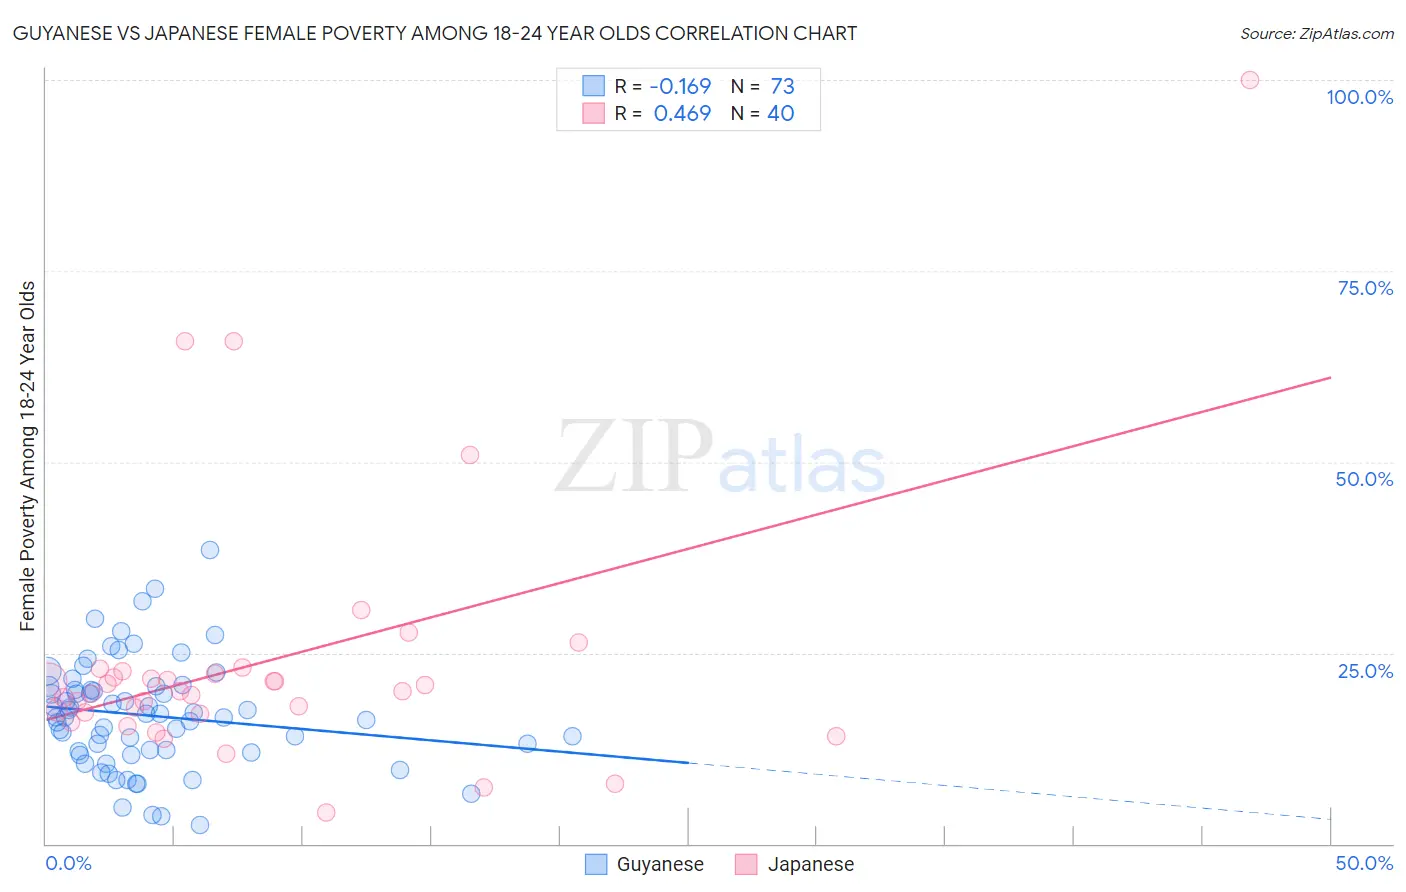 Guyanese vs Japanese Female Poverty Among 18-24 Year Olds